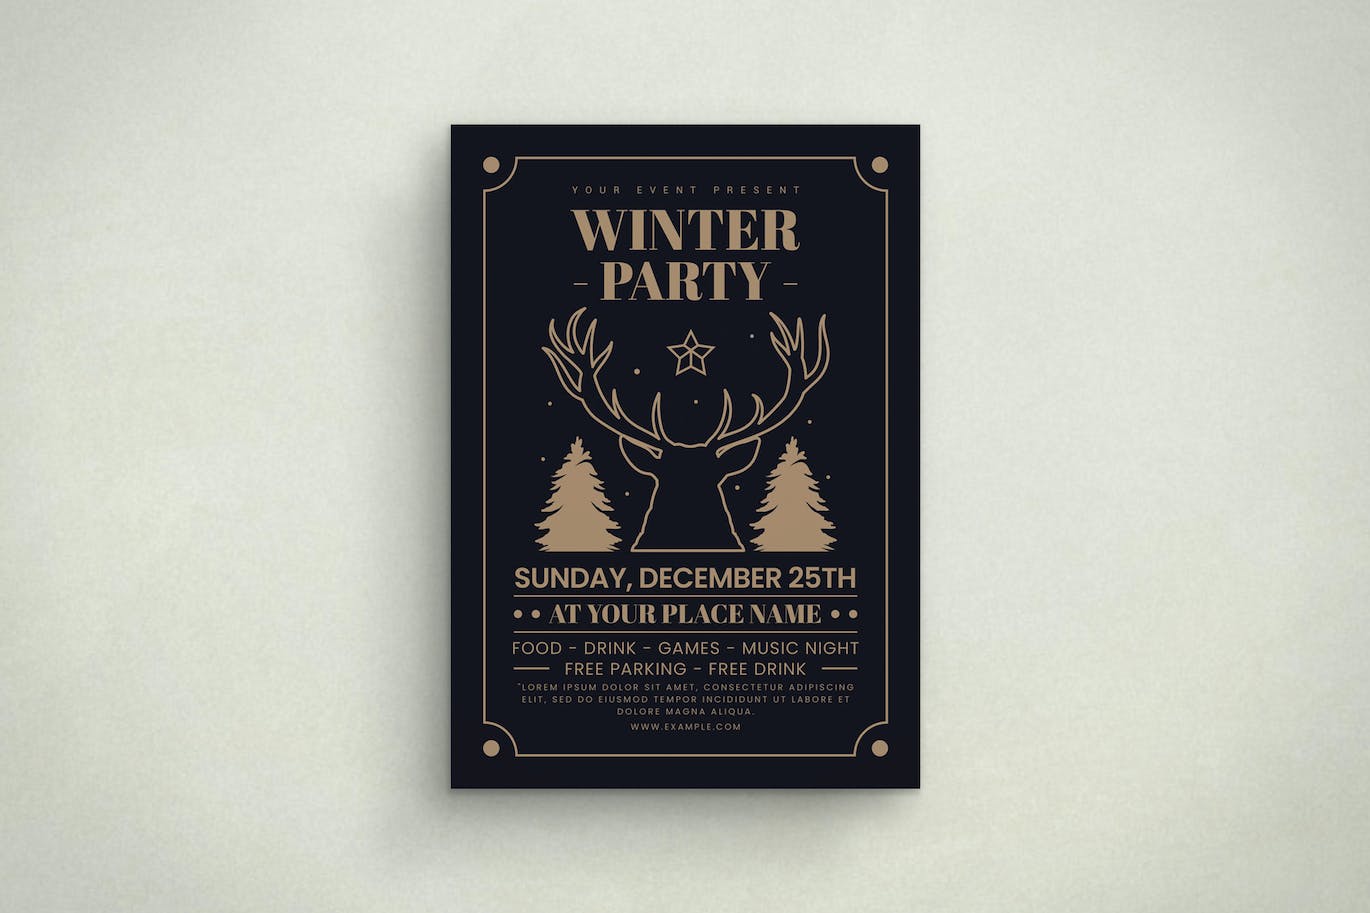 冬季派对活动海报模板 (AI,PSD)